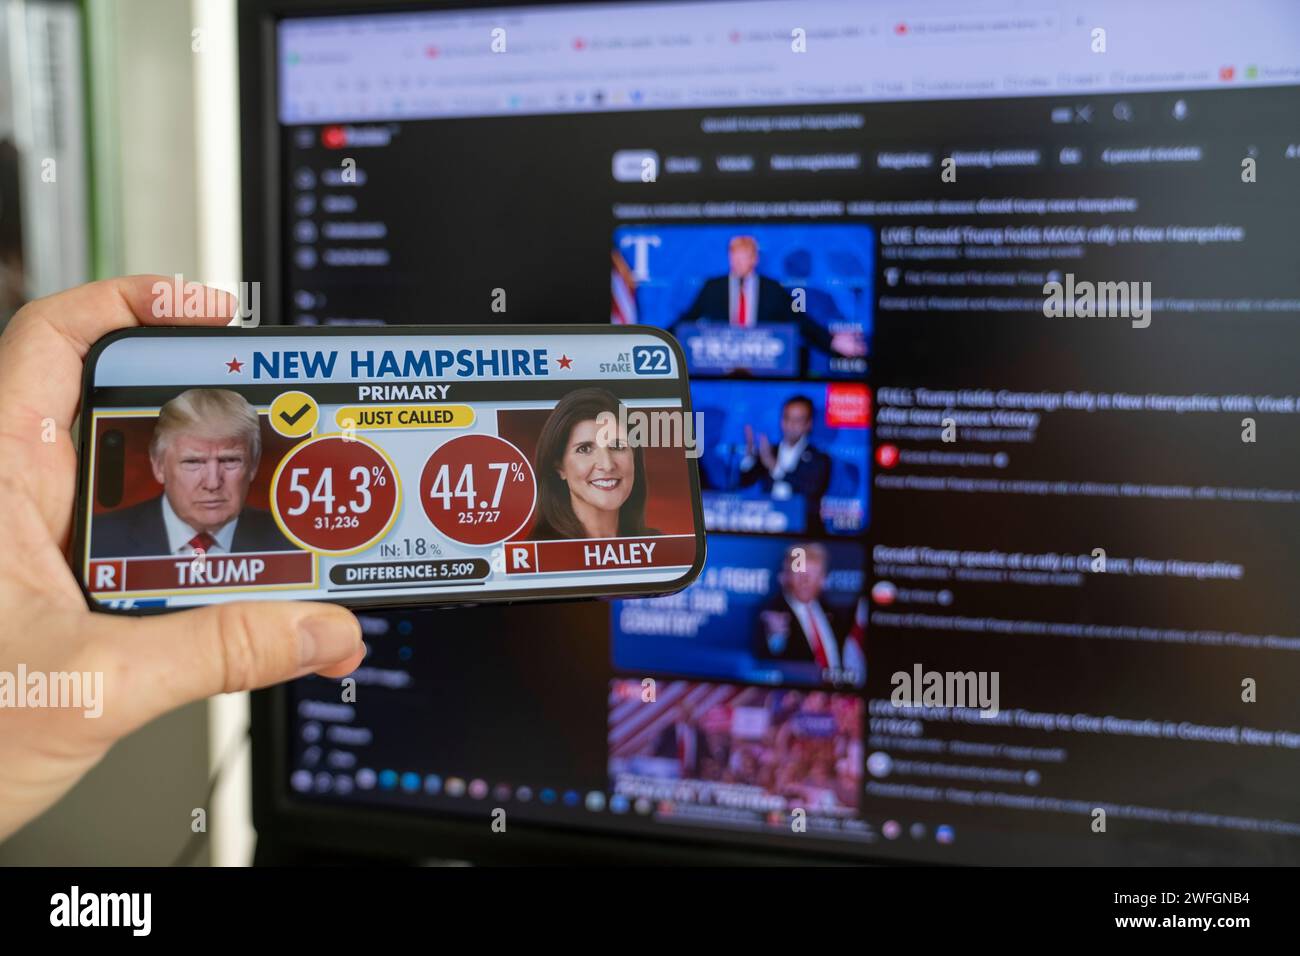 Trump a battu Haley à la primaire du New Hampshire. Un homme s'enquiert de l'élection au téléphone. Budapest, Hongrie - 23.01.2024 Banque D'Images